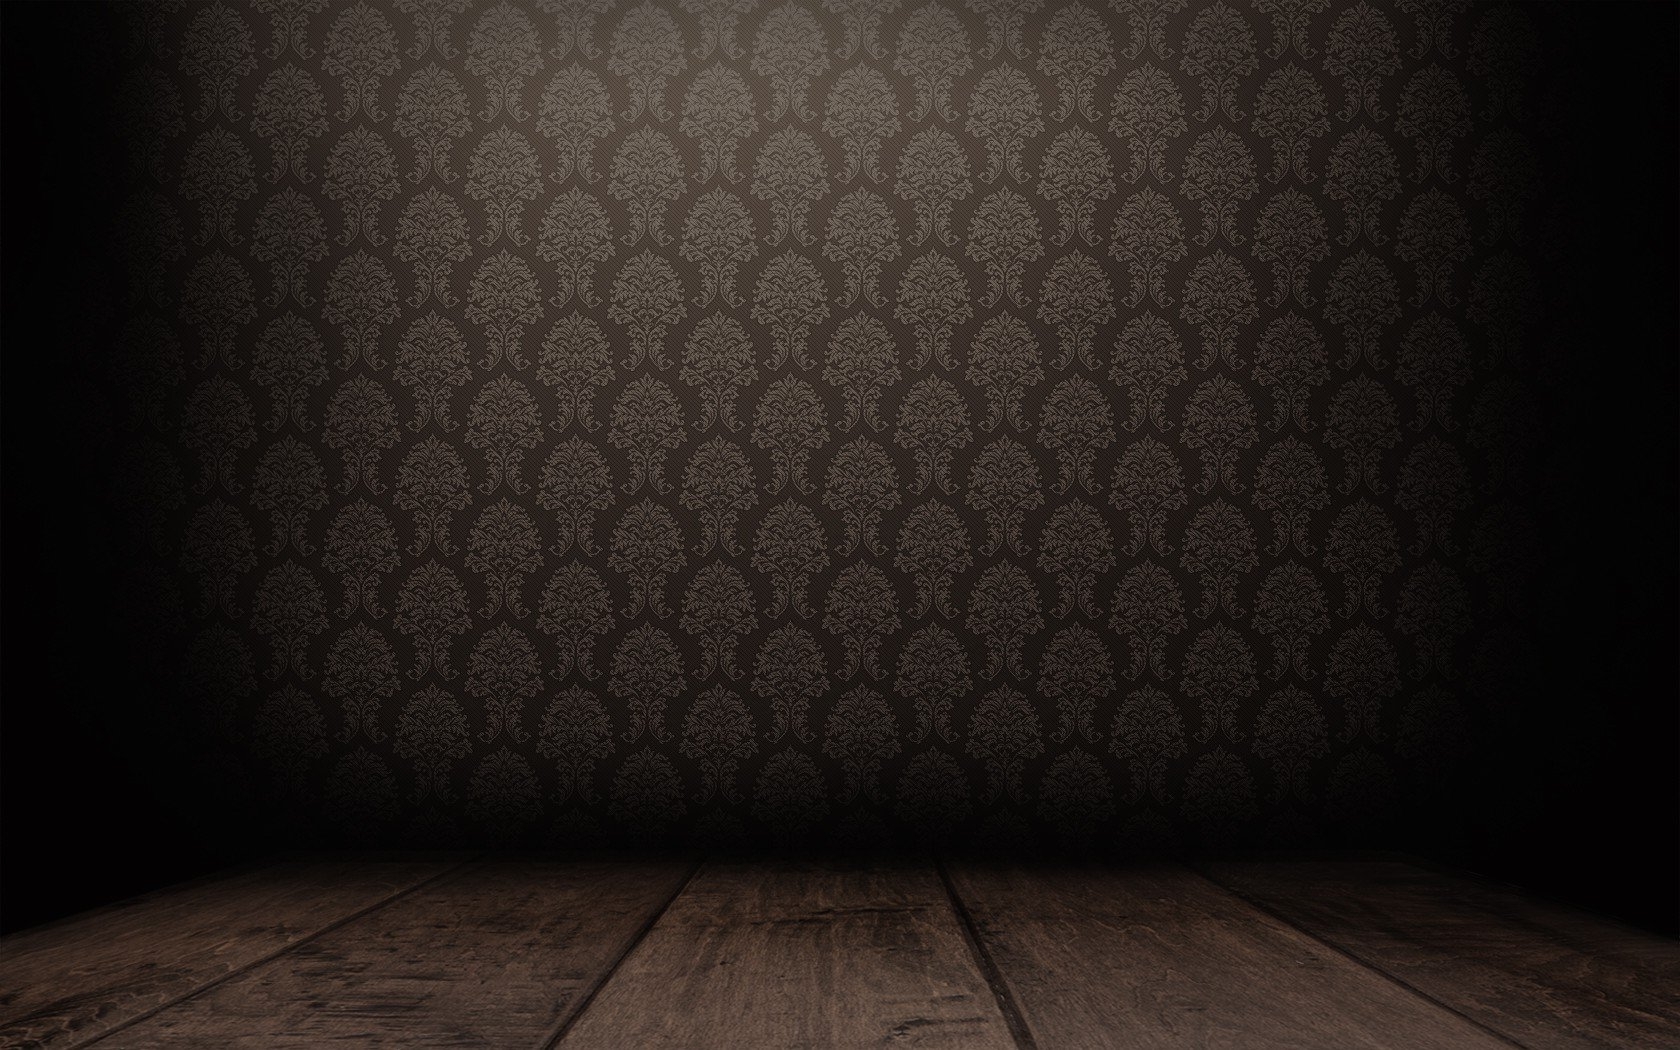 [23+] Dark Room Wallpapers | WallpaperSafari.com